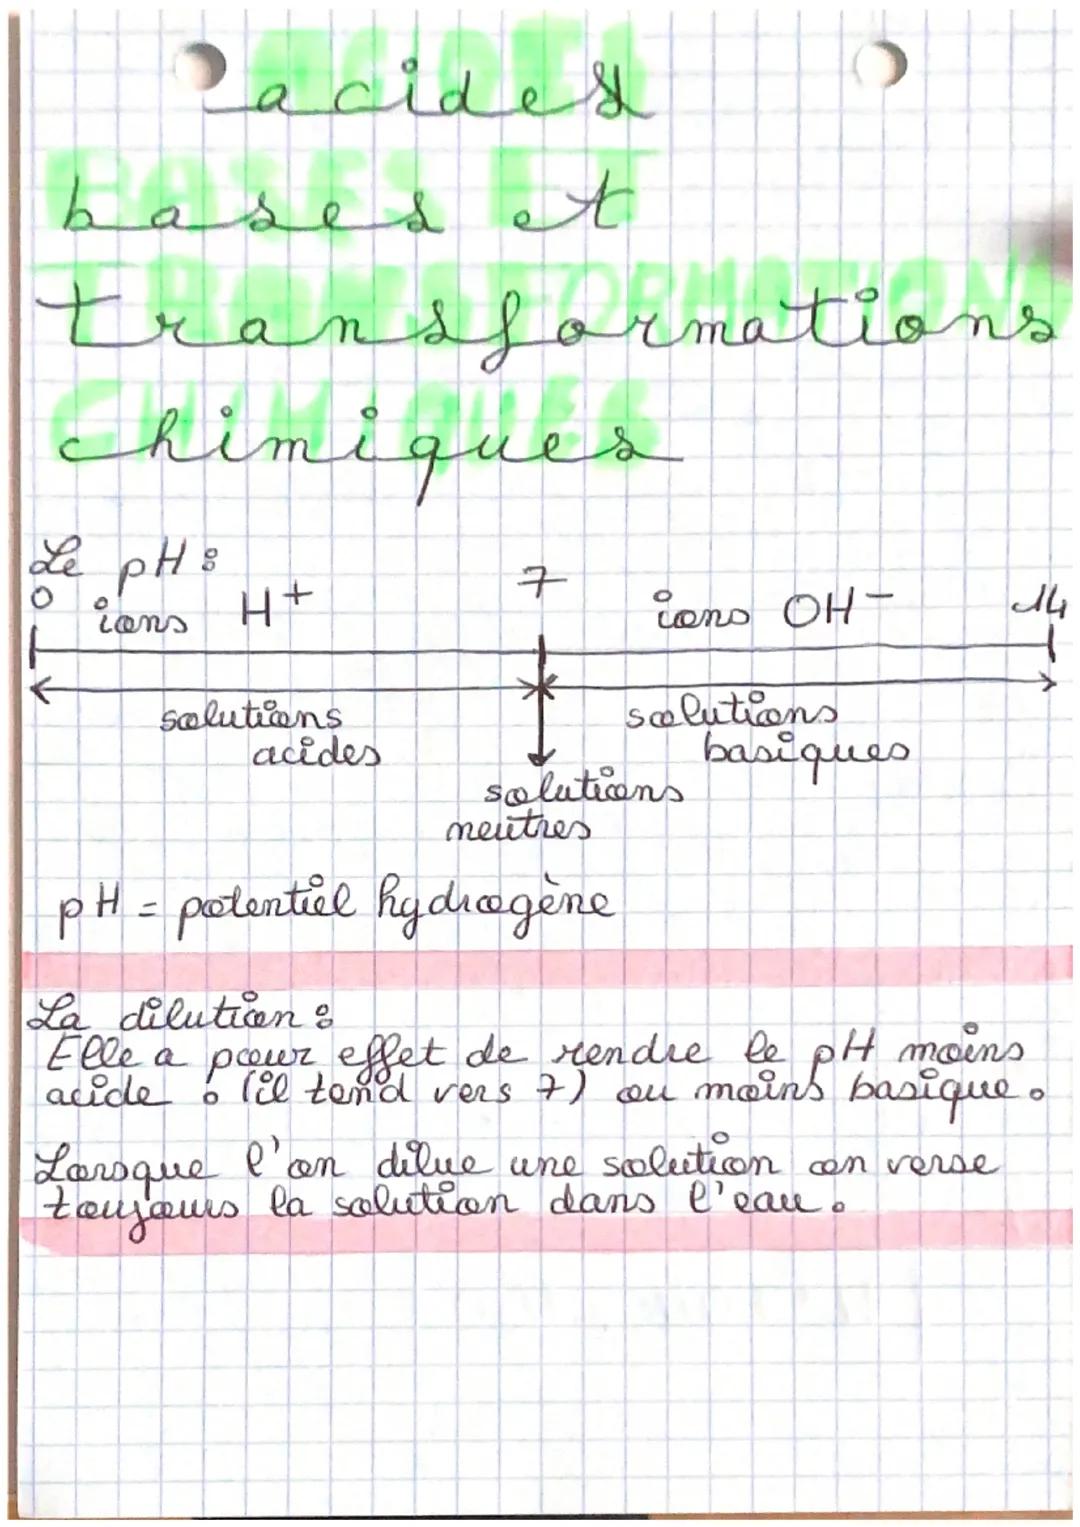 Pacides
bases t
A
ransformations
s
Chimique
Le pH s
ions
H+
solutions
acides
7
cons OH-
solutions
basiques
solutions
neutres
pH = potentiel 